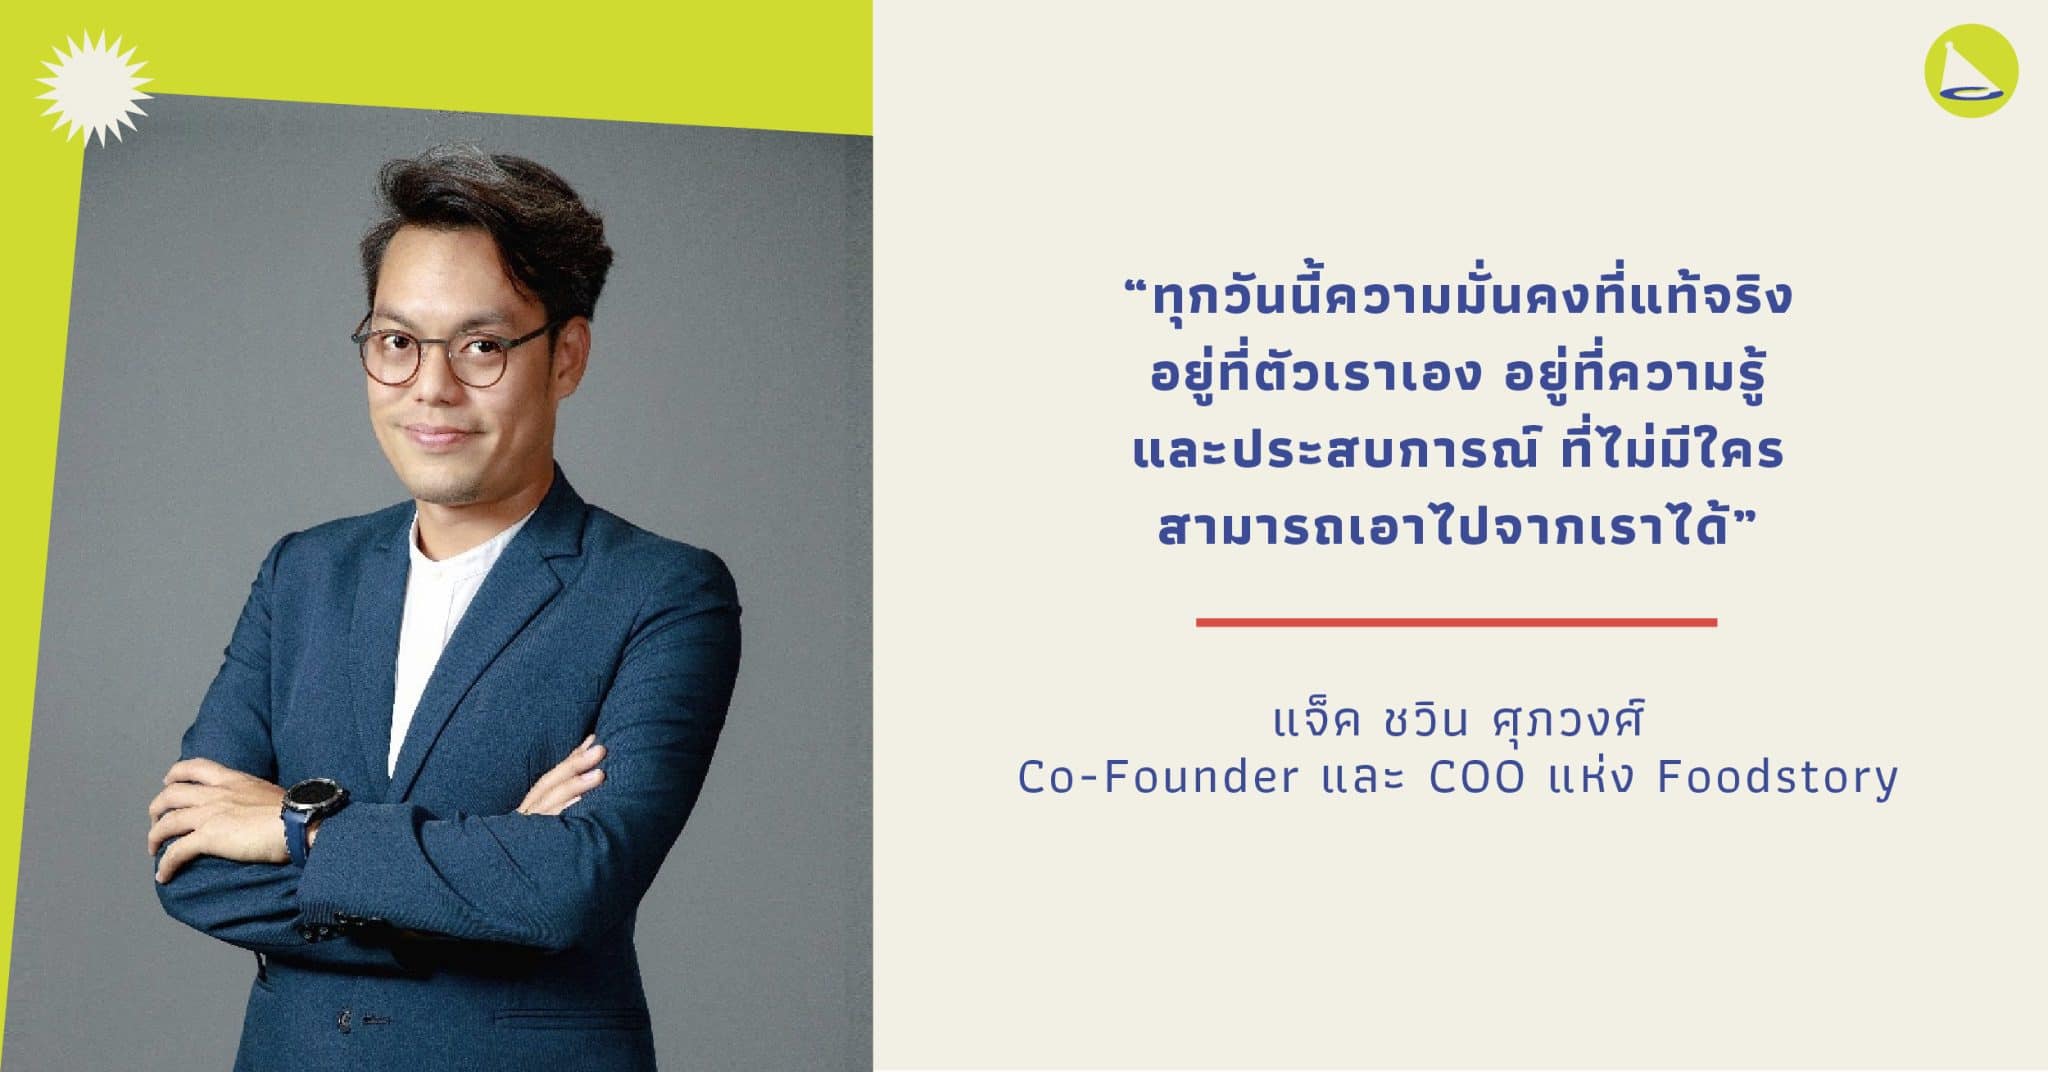 แจ็ค ชวิน ศุภวงศ์: Co-Founder และ COO แห่ง FoodStory